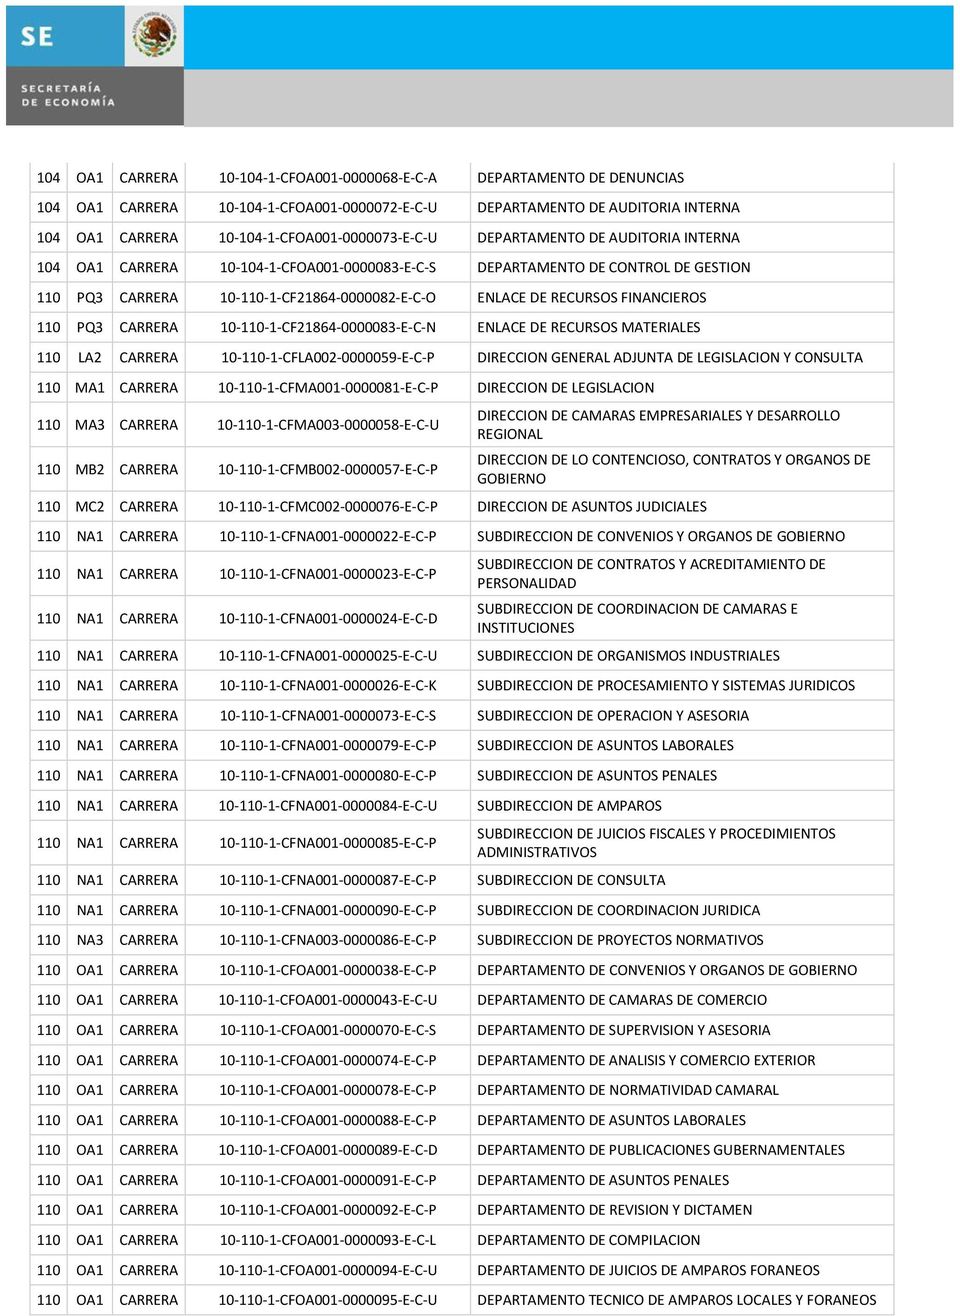 ENLACE DE RECURSOS FINANCIEROS 110 PQ3 CARRERA 10-110-1-CF21864-0000083-E-C-N ENLACE DE RECURSOS MATERIALES 110 LA2 CARRERA 10-110-1-CFLA002-0000059-E-C-P DIRECCION GENERAL ADJUNTA DE LEGISLACION Y